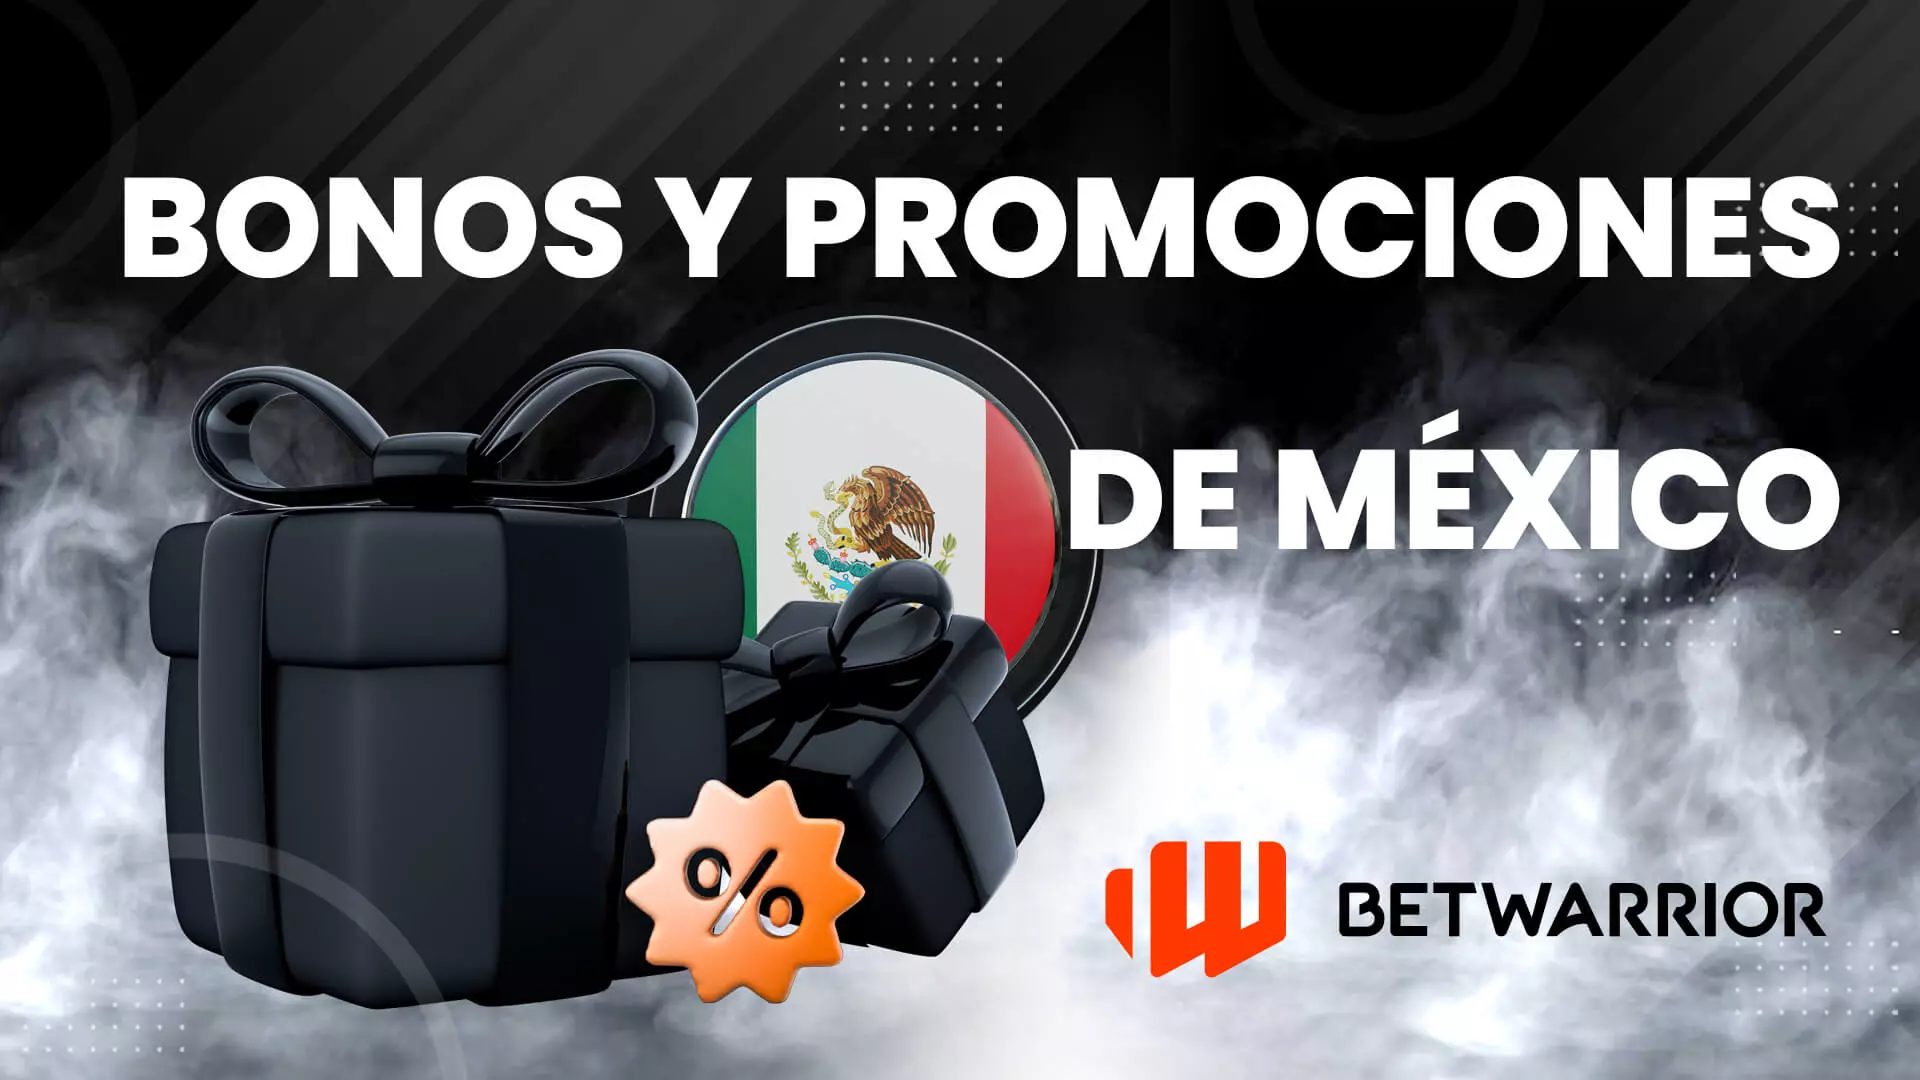 bonos y promociones de betwarrior mexico